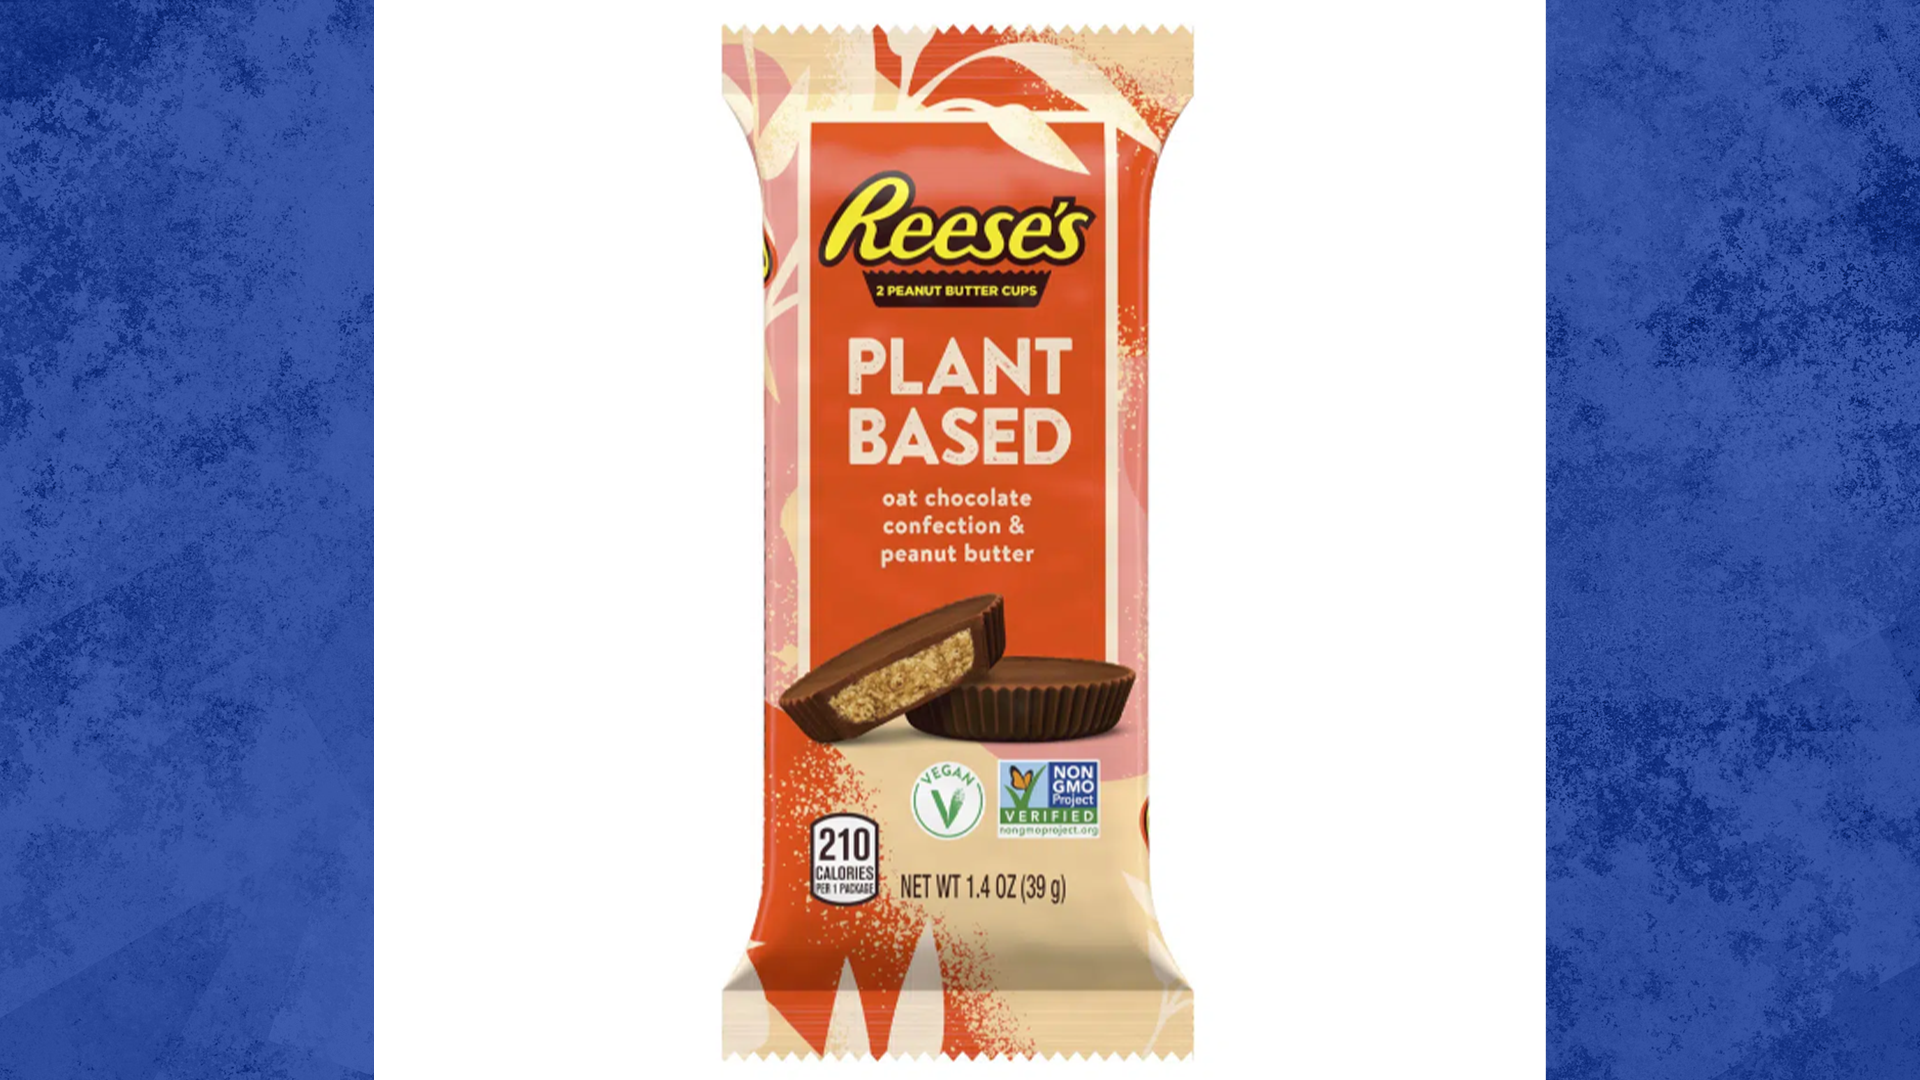 Les chocolats de Reese’s reçoivent le traitement végétalien.